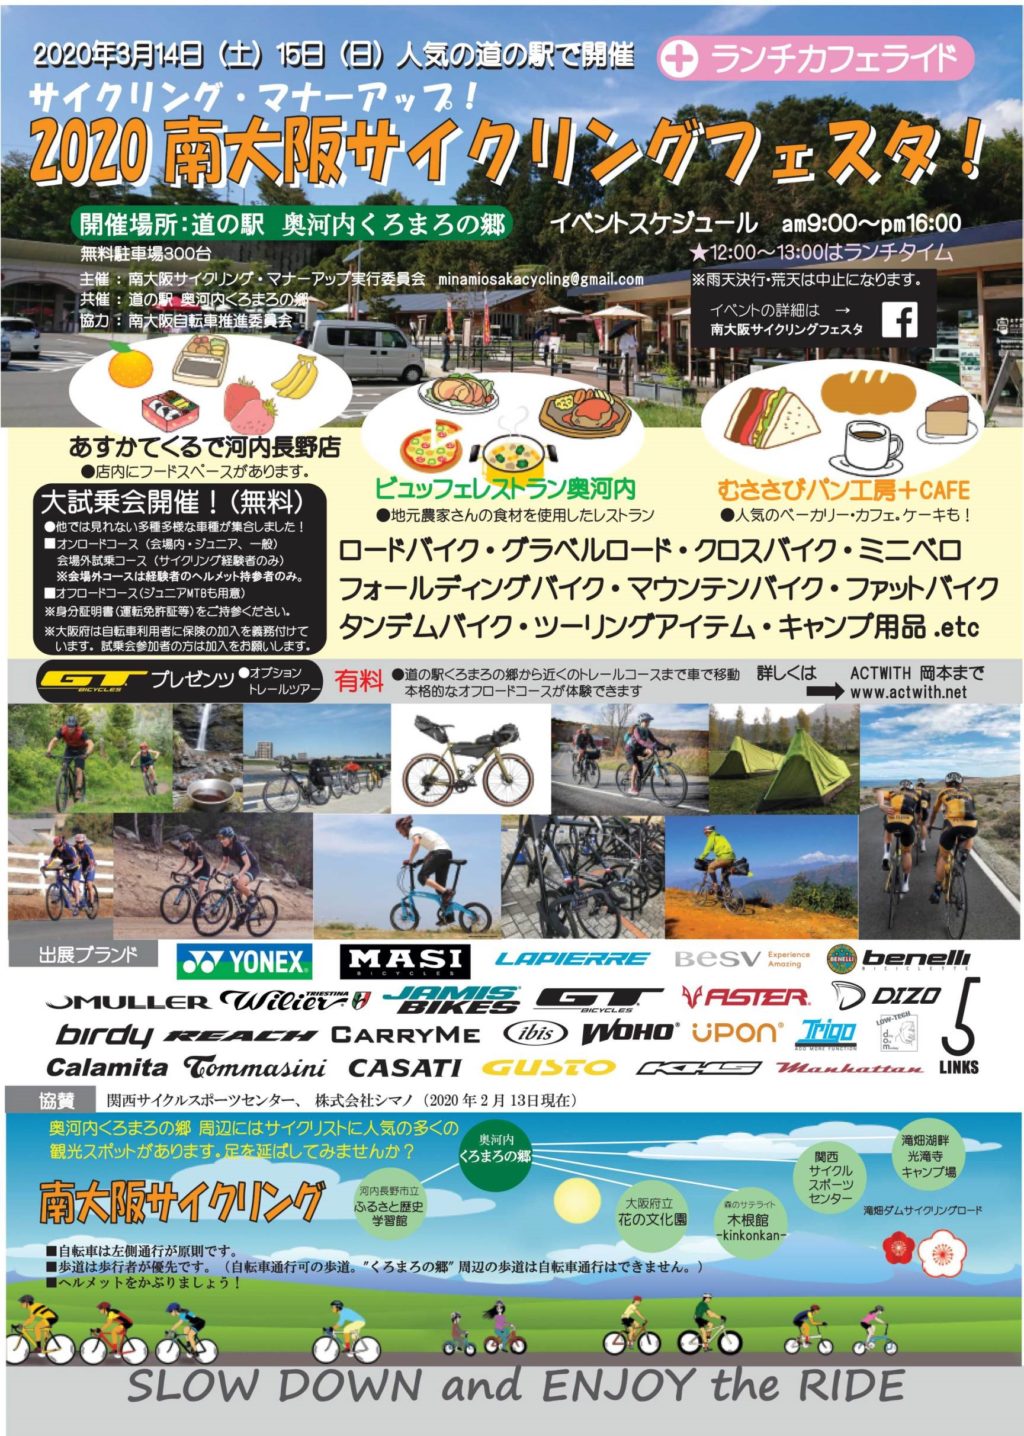 3 14 土 15 日 開催 奥河内くろまろの郷で 南大阪サイクリングフェスタ があるよ 河内長野 さかにゅー